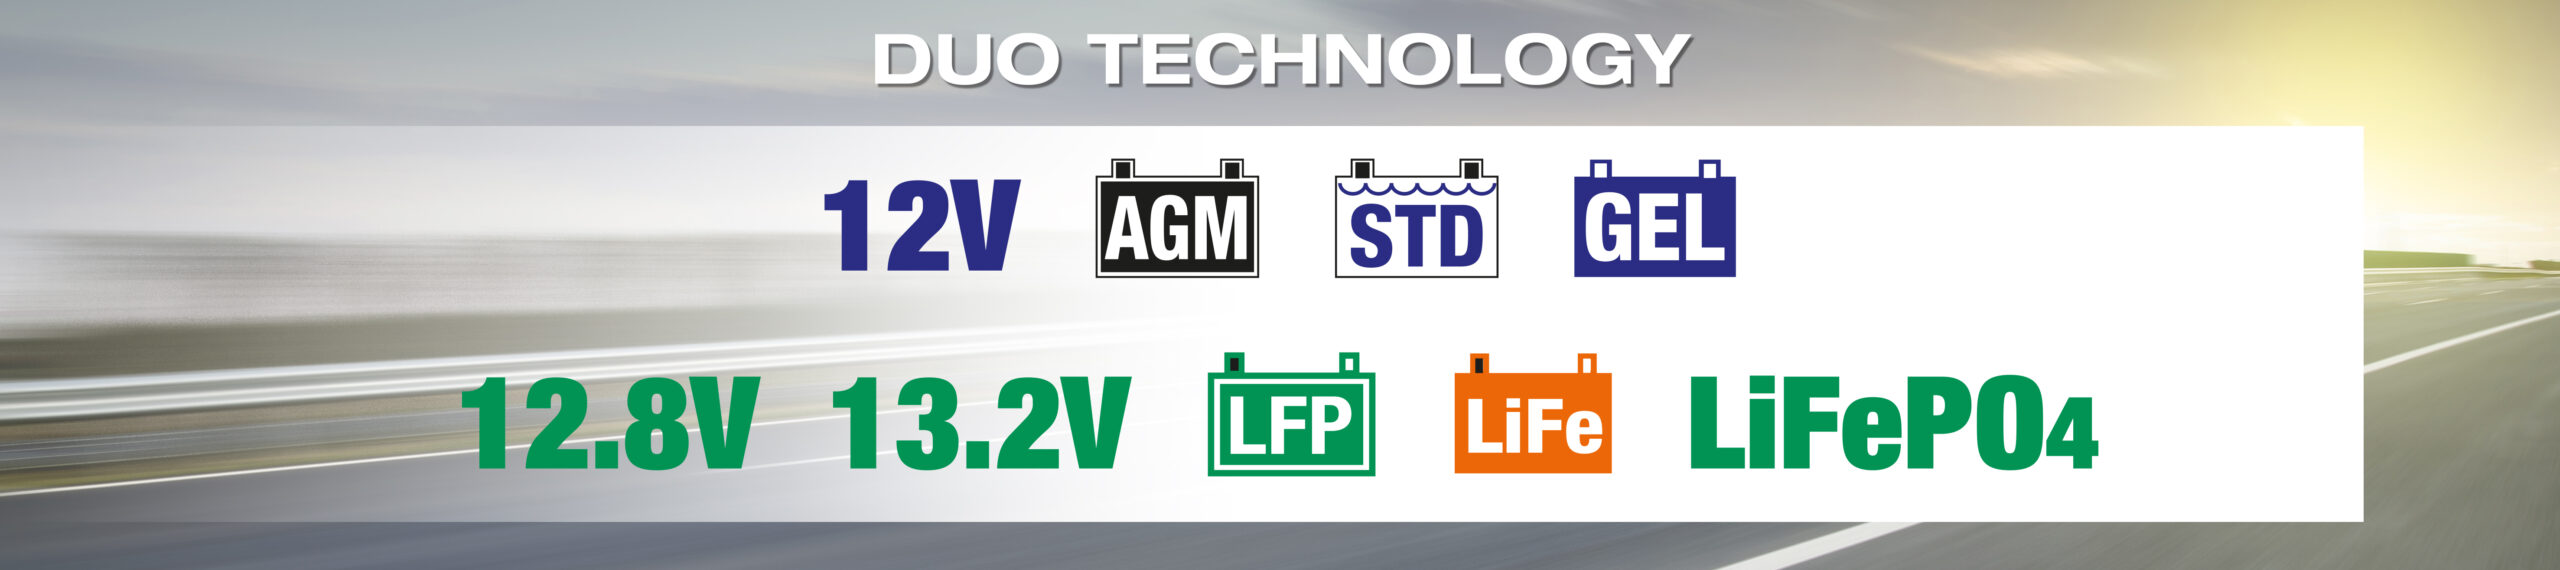 Tecnología DUO de OptiMate que incluye baterías AGM, STD y GEL de 12V y baterías de litio LiFe/LFP (LiFePO4) de 12.8V/13.2V